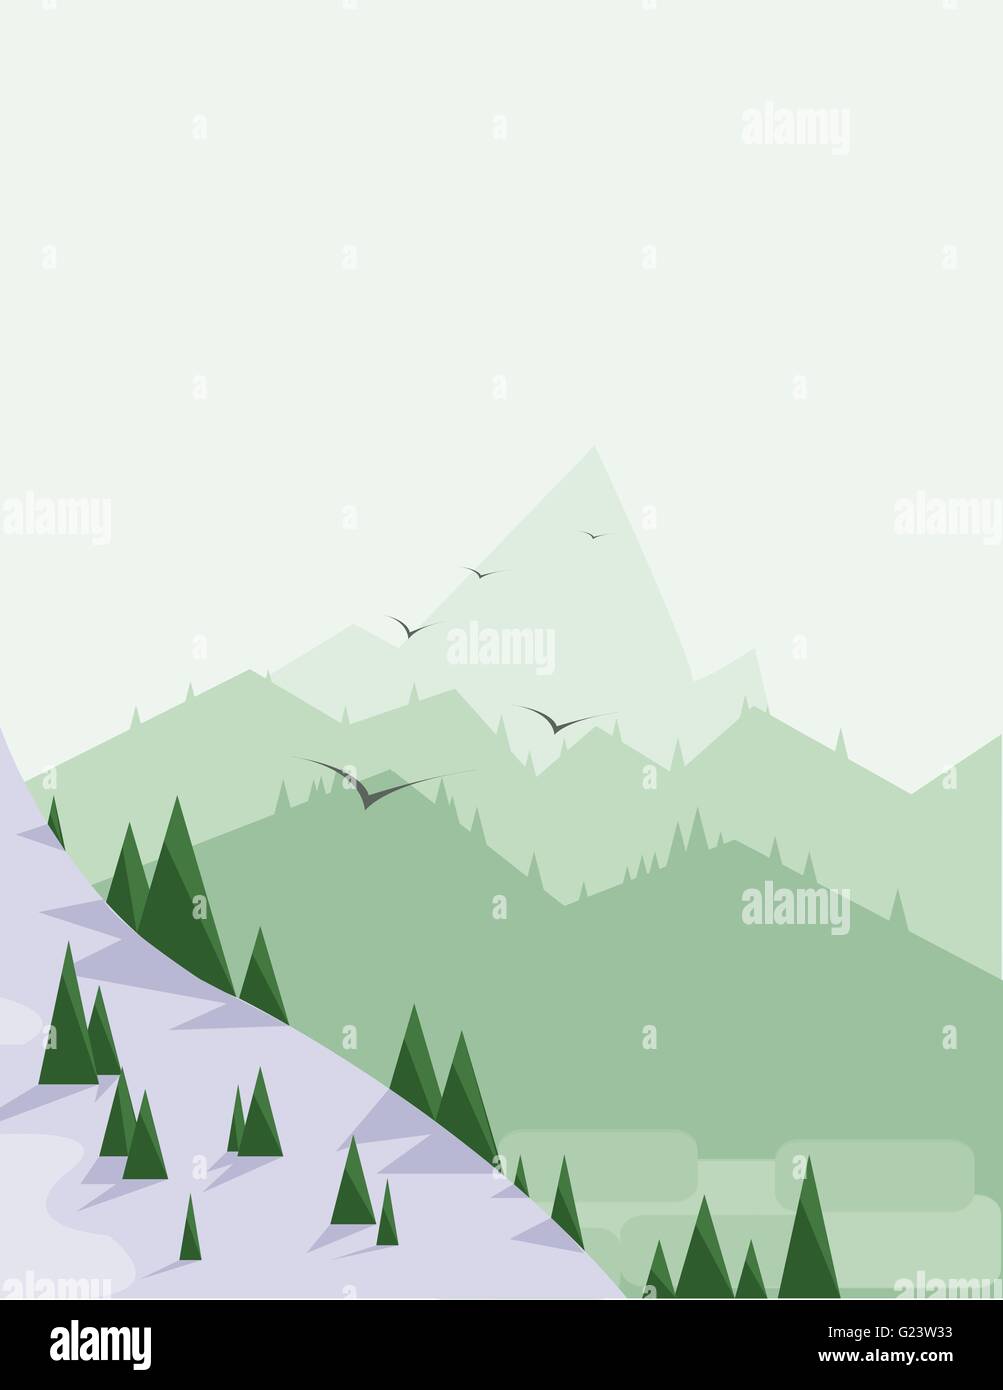 Paesaggio Astratto con alberi di pino, neve, uccelli e verdi colline, su uno sfondo verde chiaro. Vettore digitale dell'immagine. Illustrazione Vettoriale